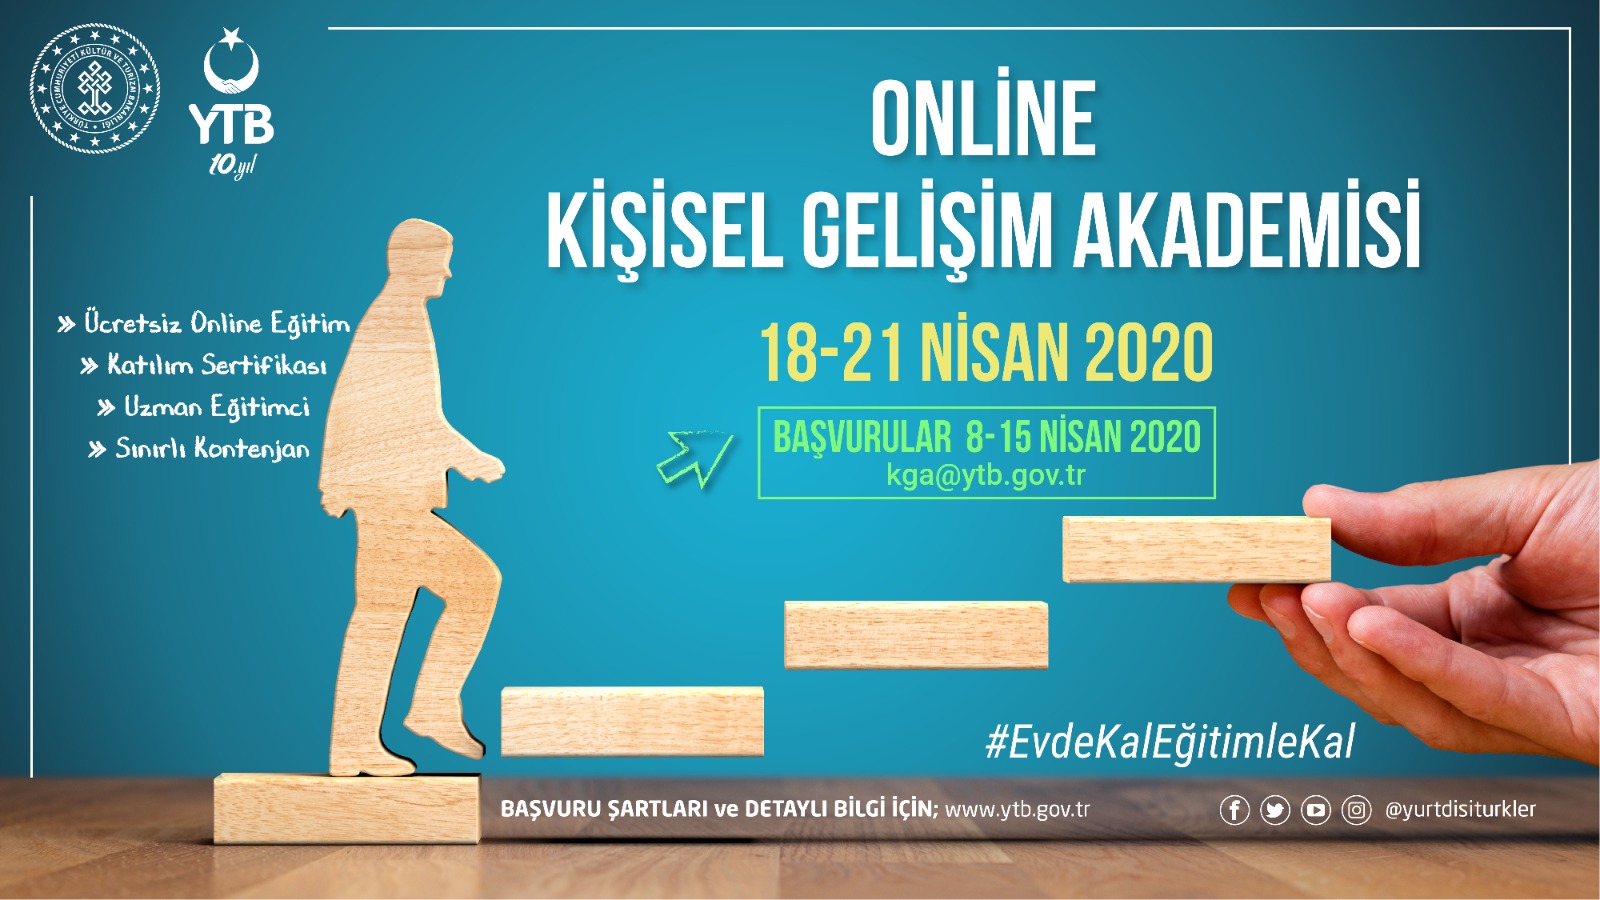 online kisisel gelisim akademisi duyurular yurtdisi turkler ve akraba topluluklar baskanligi